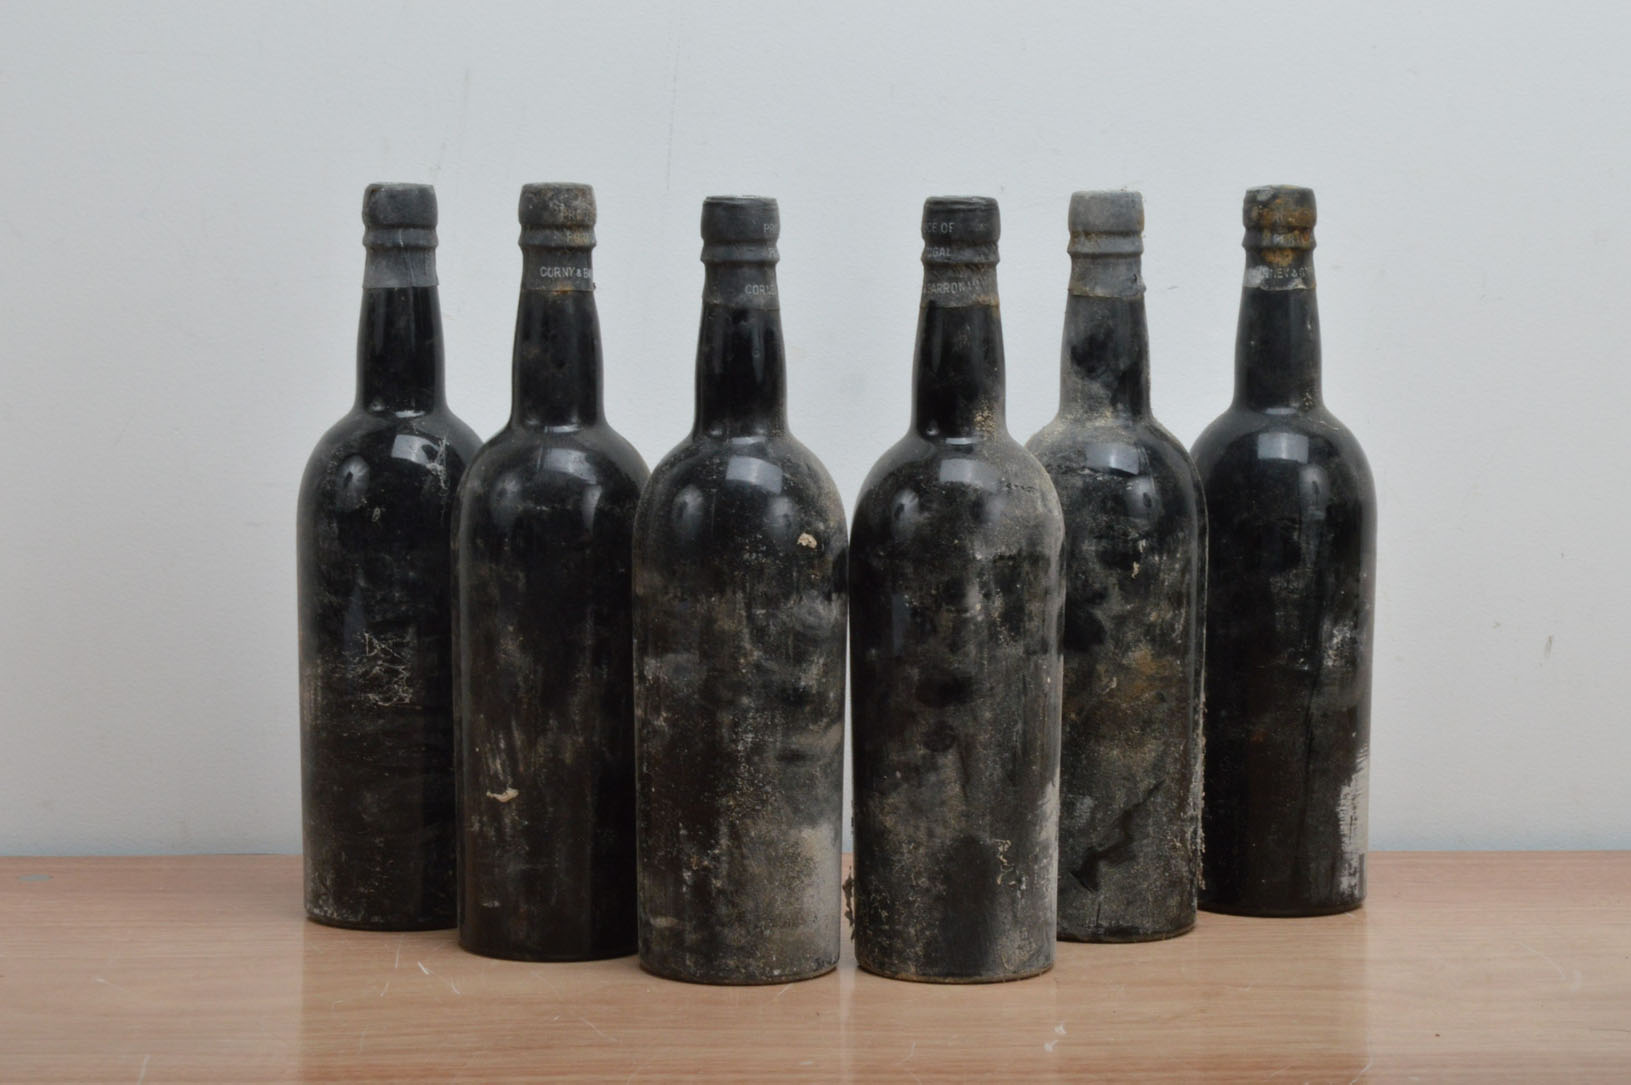 Six bottles of Quinta do Noval 1960, vintage Port, no labels (6)